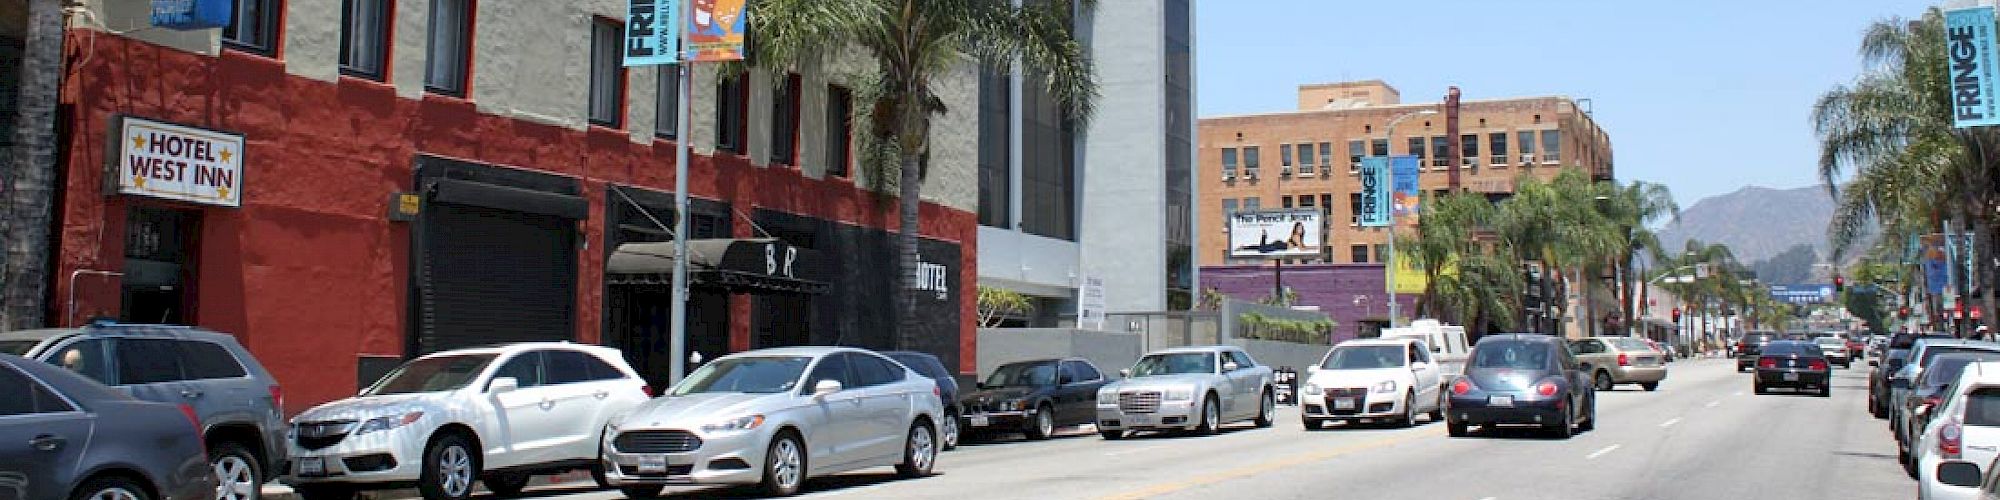 Hotel West Inn Hollywood